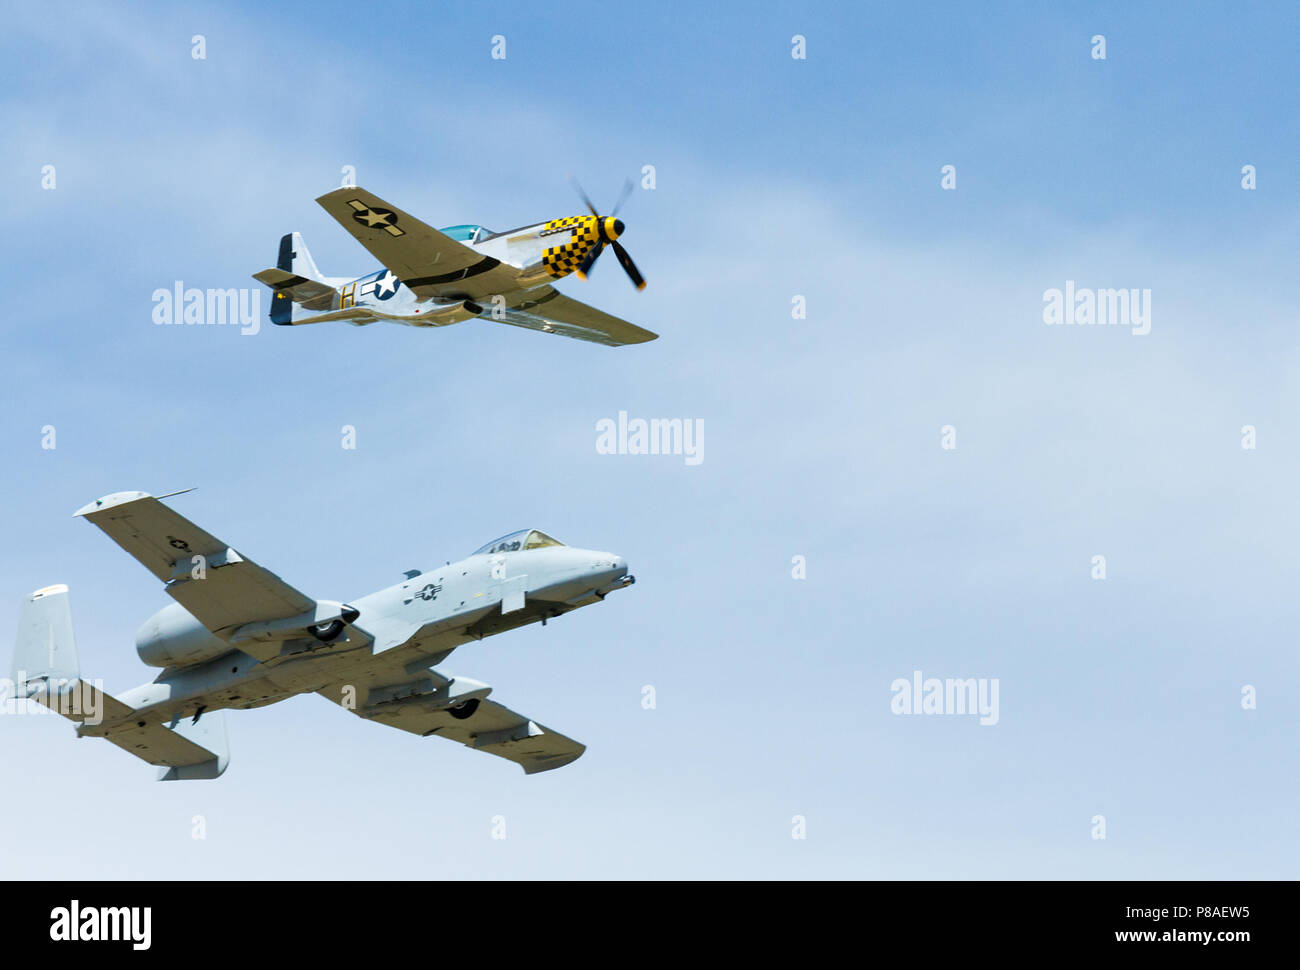 Eine P-51 Mustang fliegen mit einem A-10. Die beiden Flugzeuge für ihre Zeit sehr bekannt. Bild geschossen leicht unter und vor allem Ihr Profil angezeigt. Stockfoto